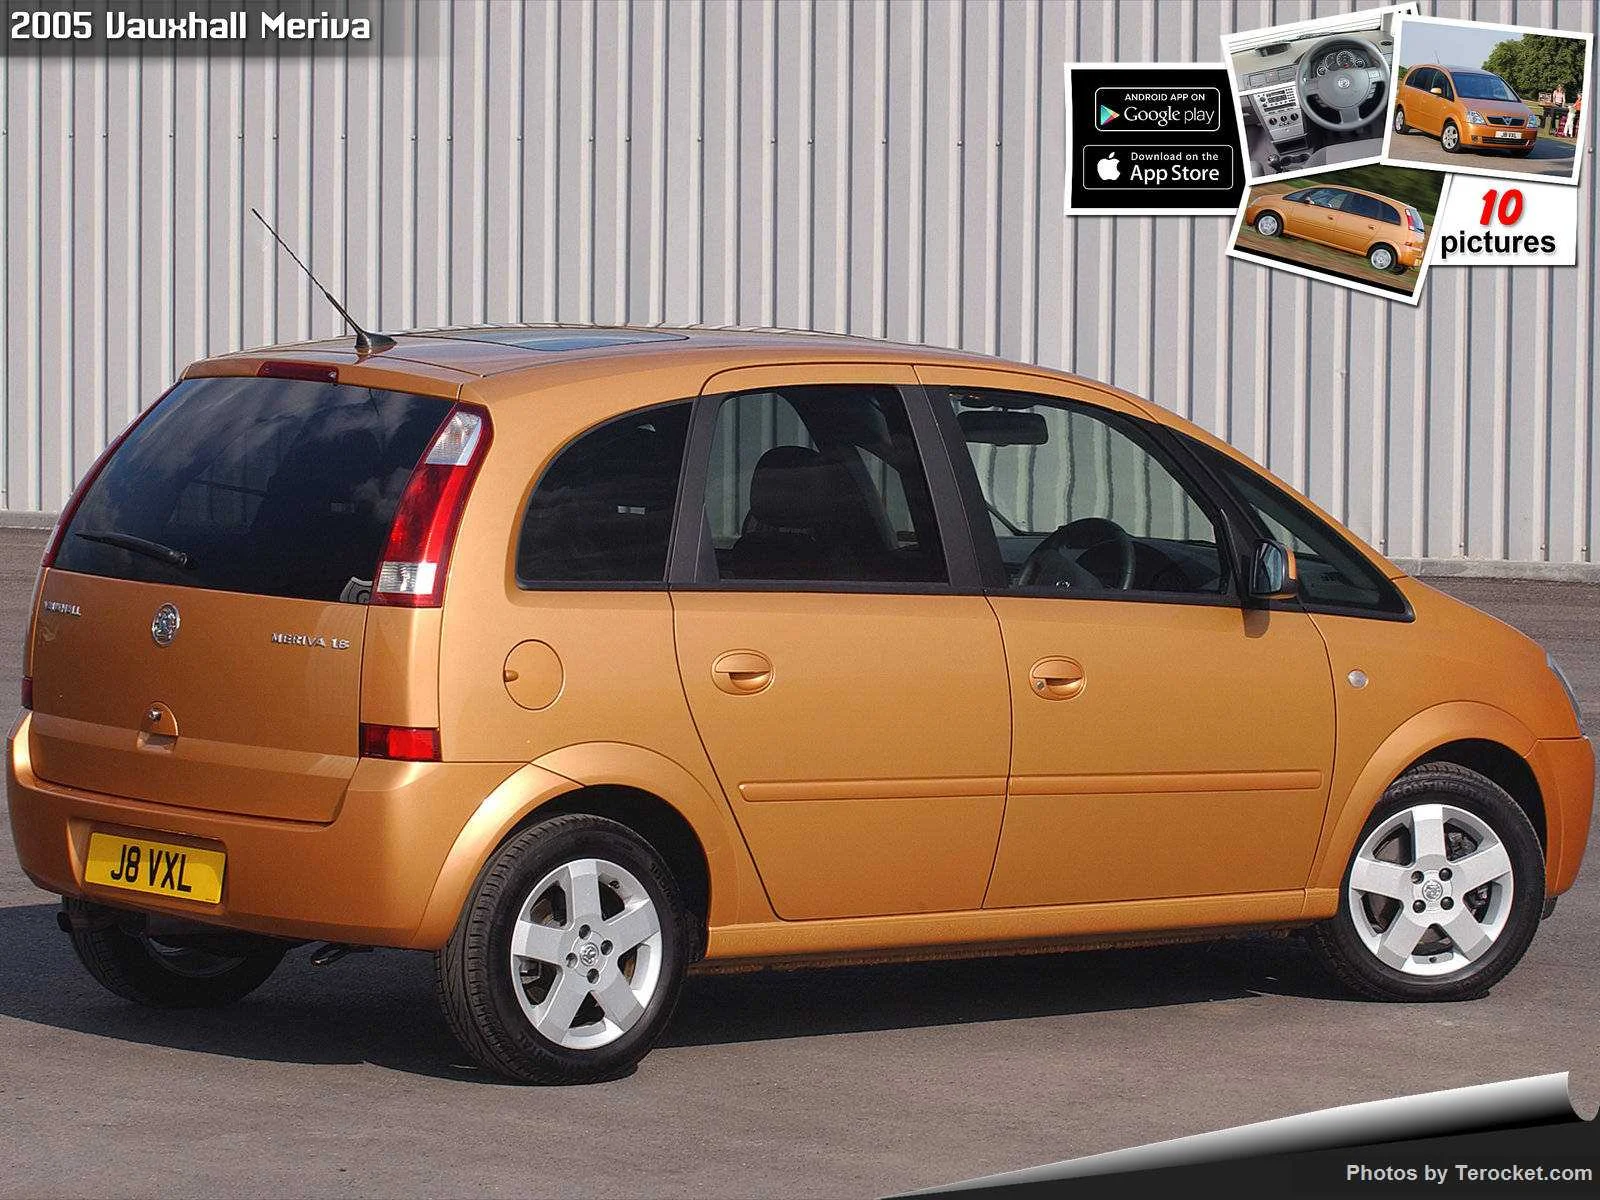 Hình ảnh xe ô tô Vauxhall Meriva 2005 & nội ngoại thất